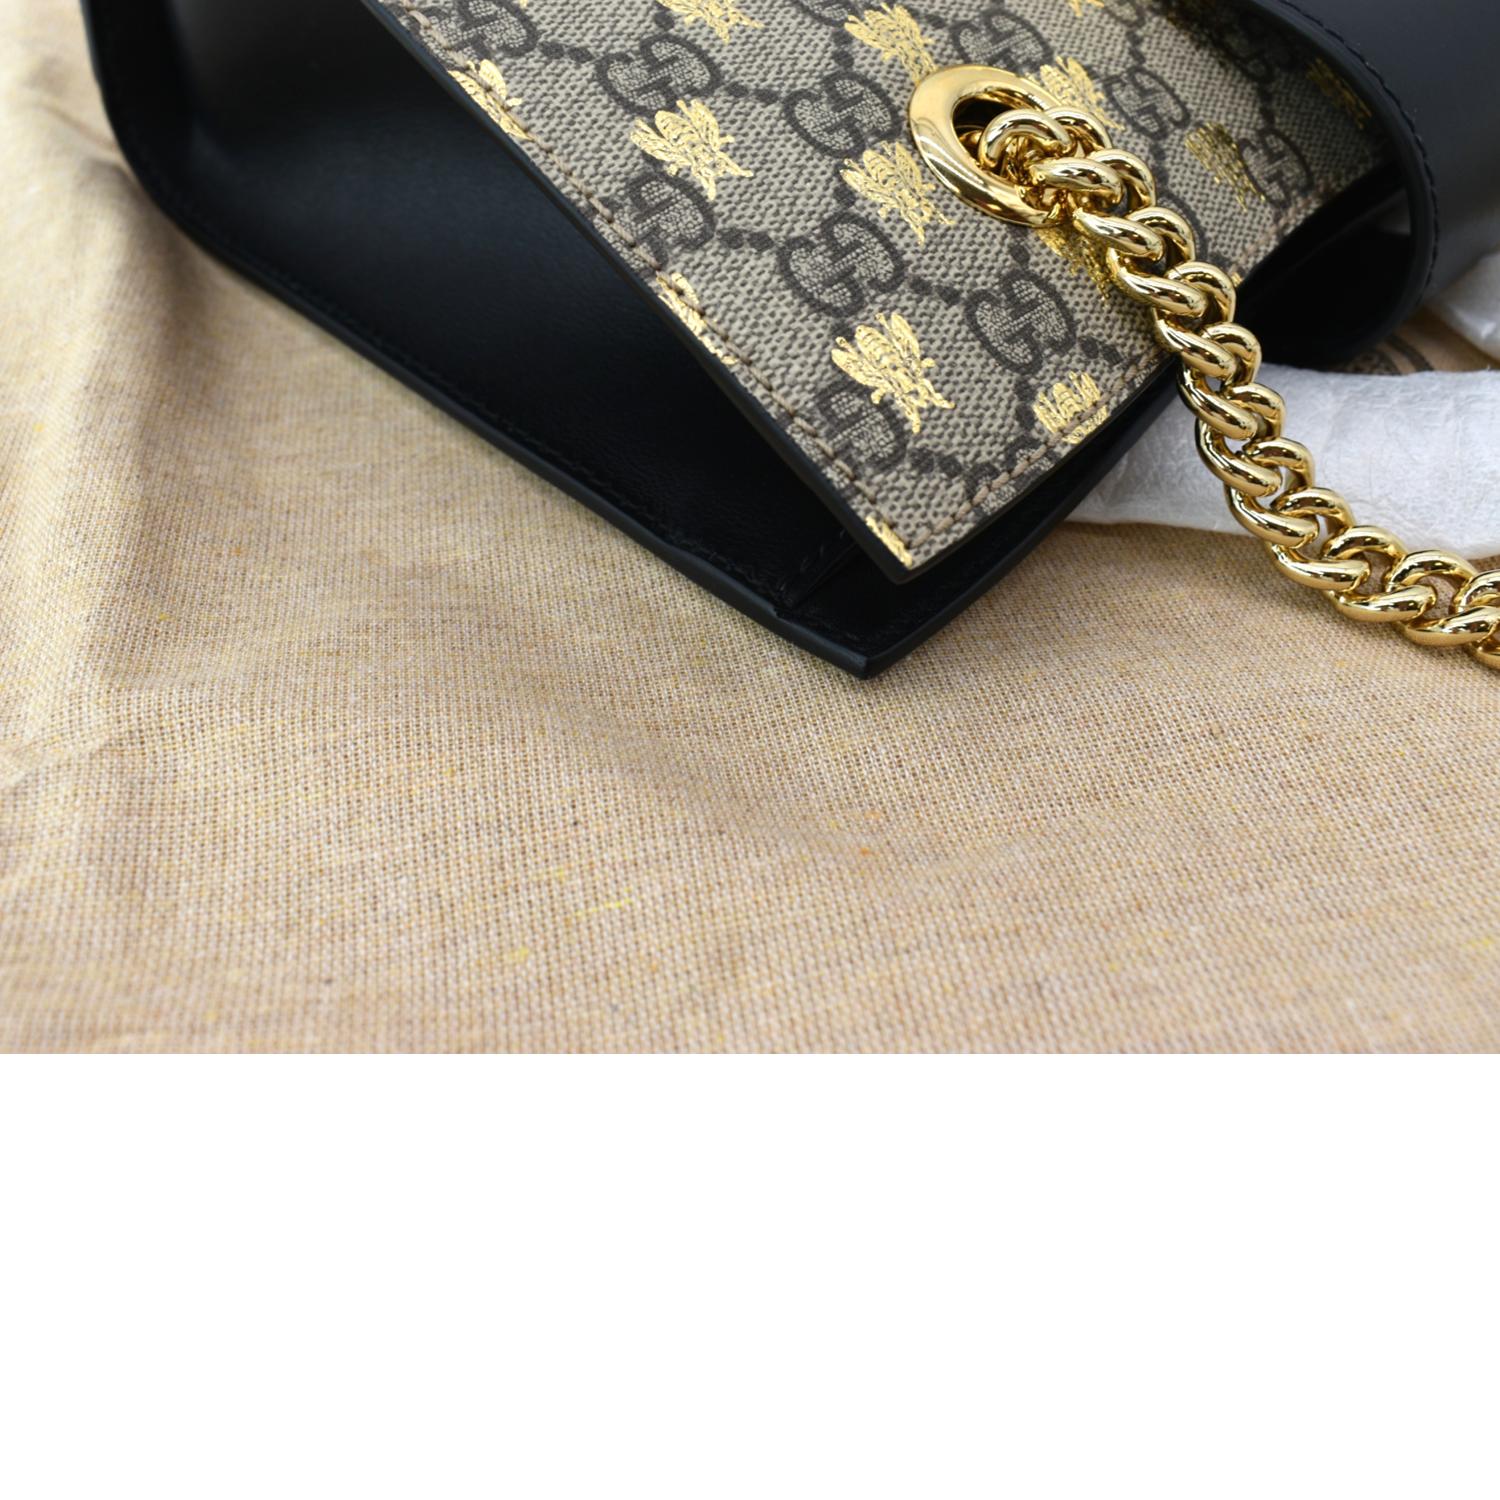 Gucci Beige/Ebony GG Supreme Canvas Exquisite Small Tote Bag